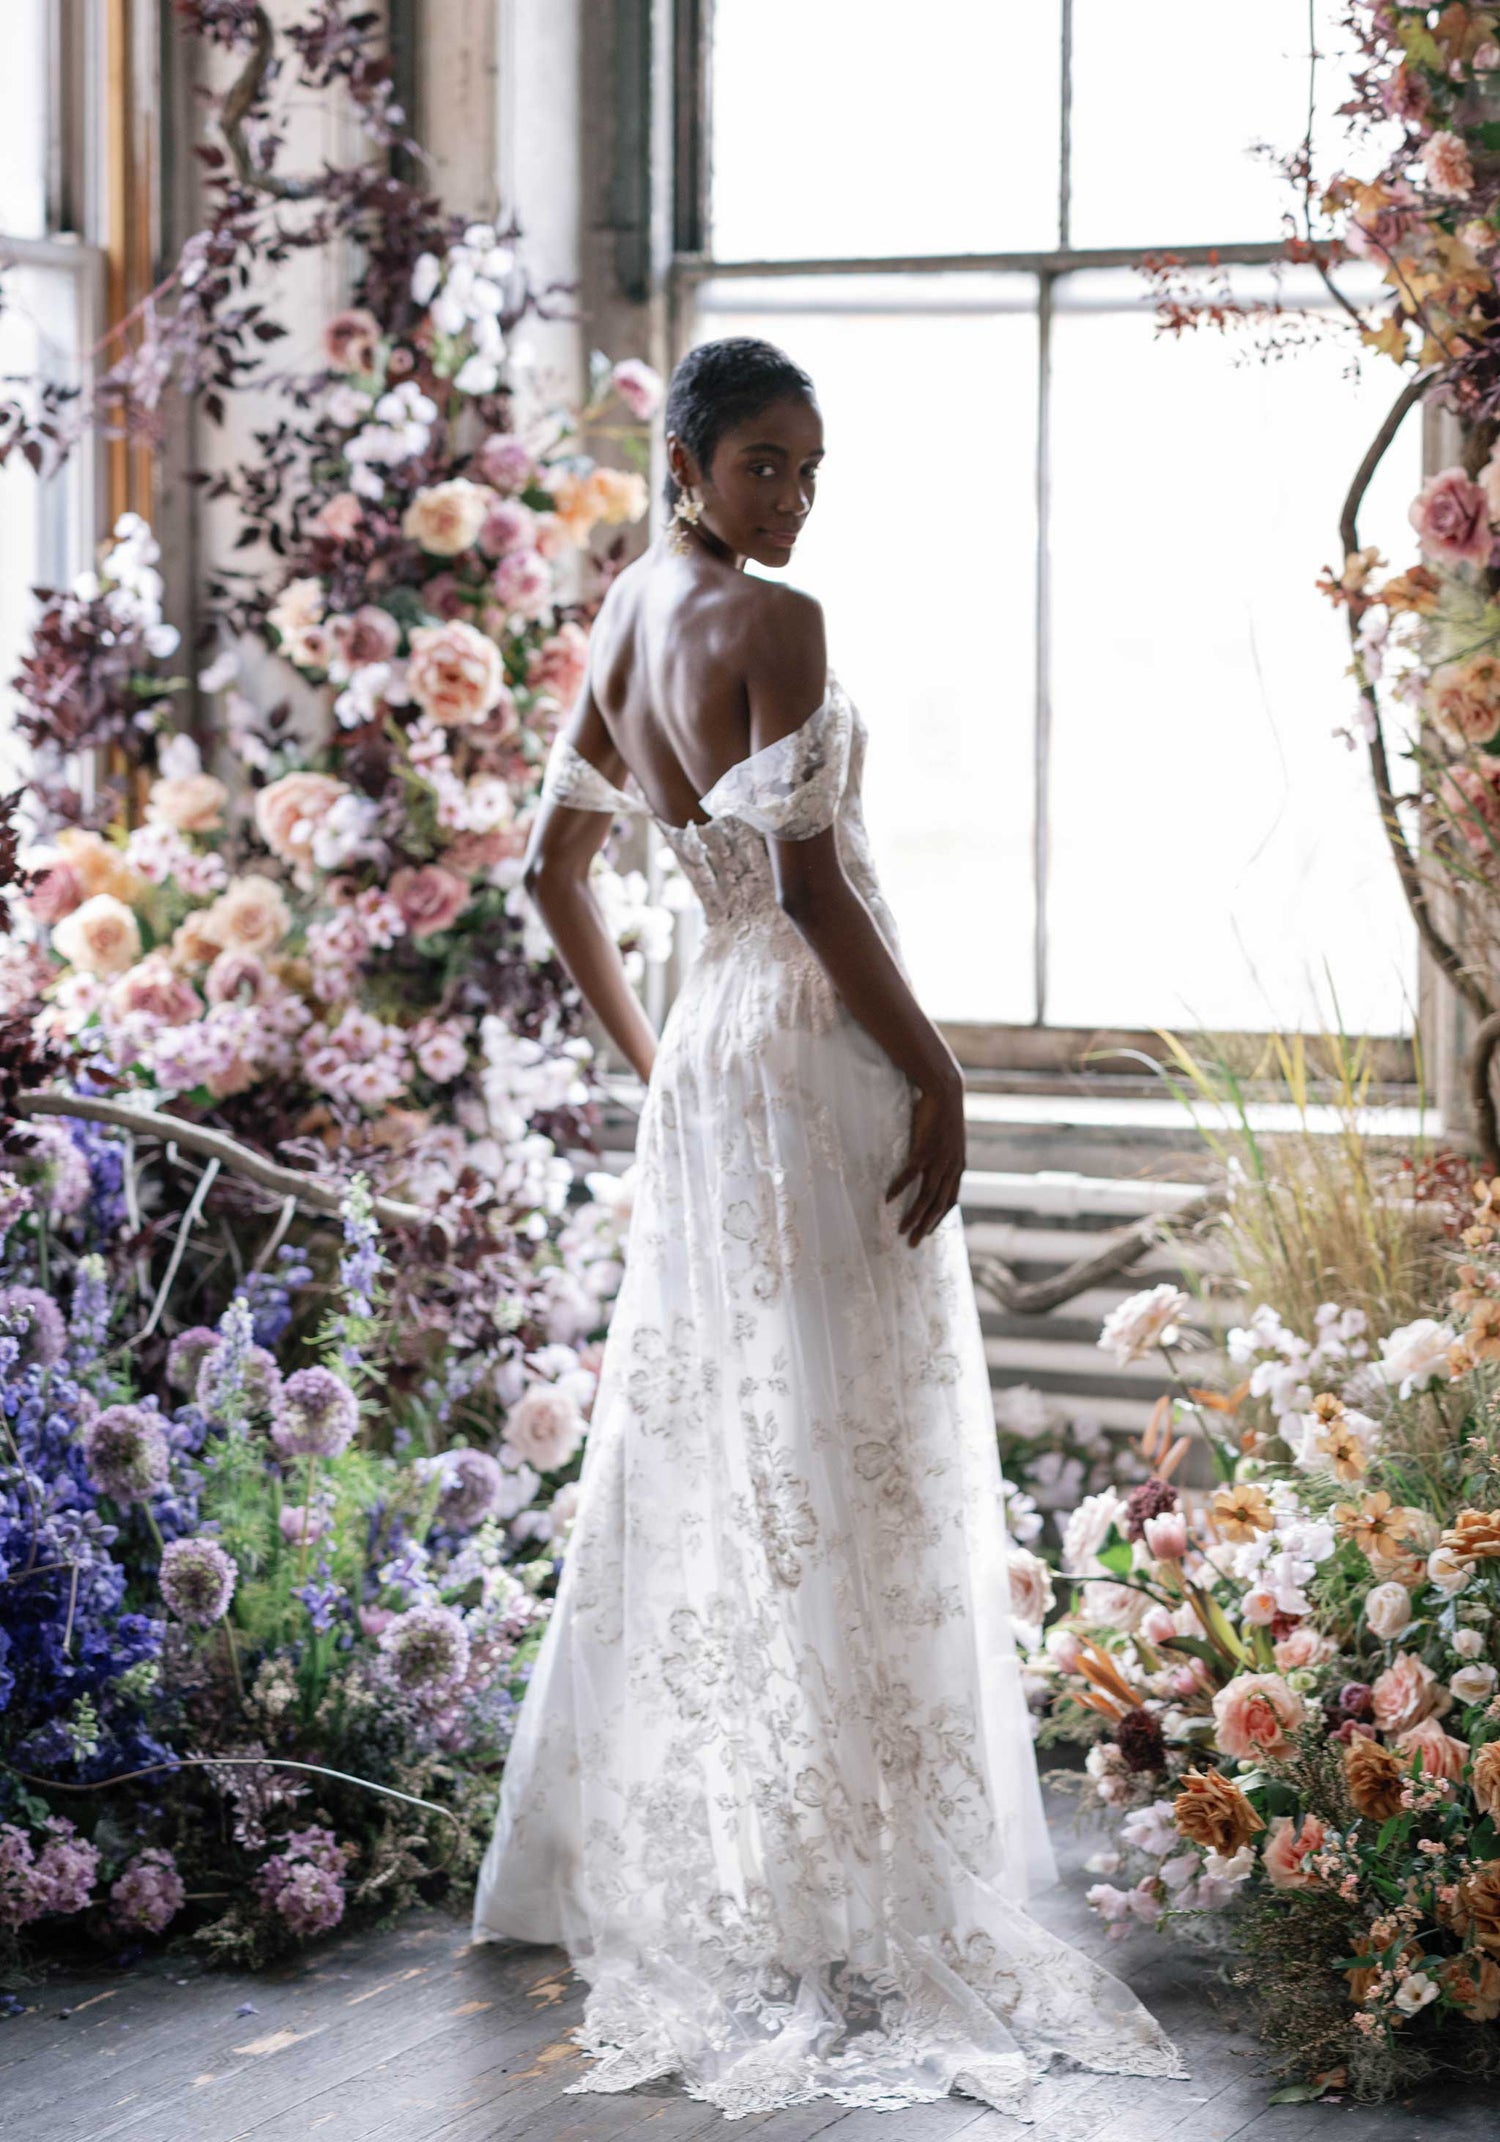 Morganite Floral Wedding Dress with Side slit